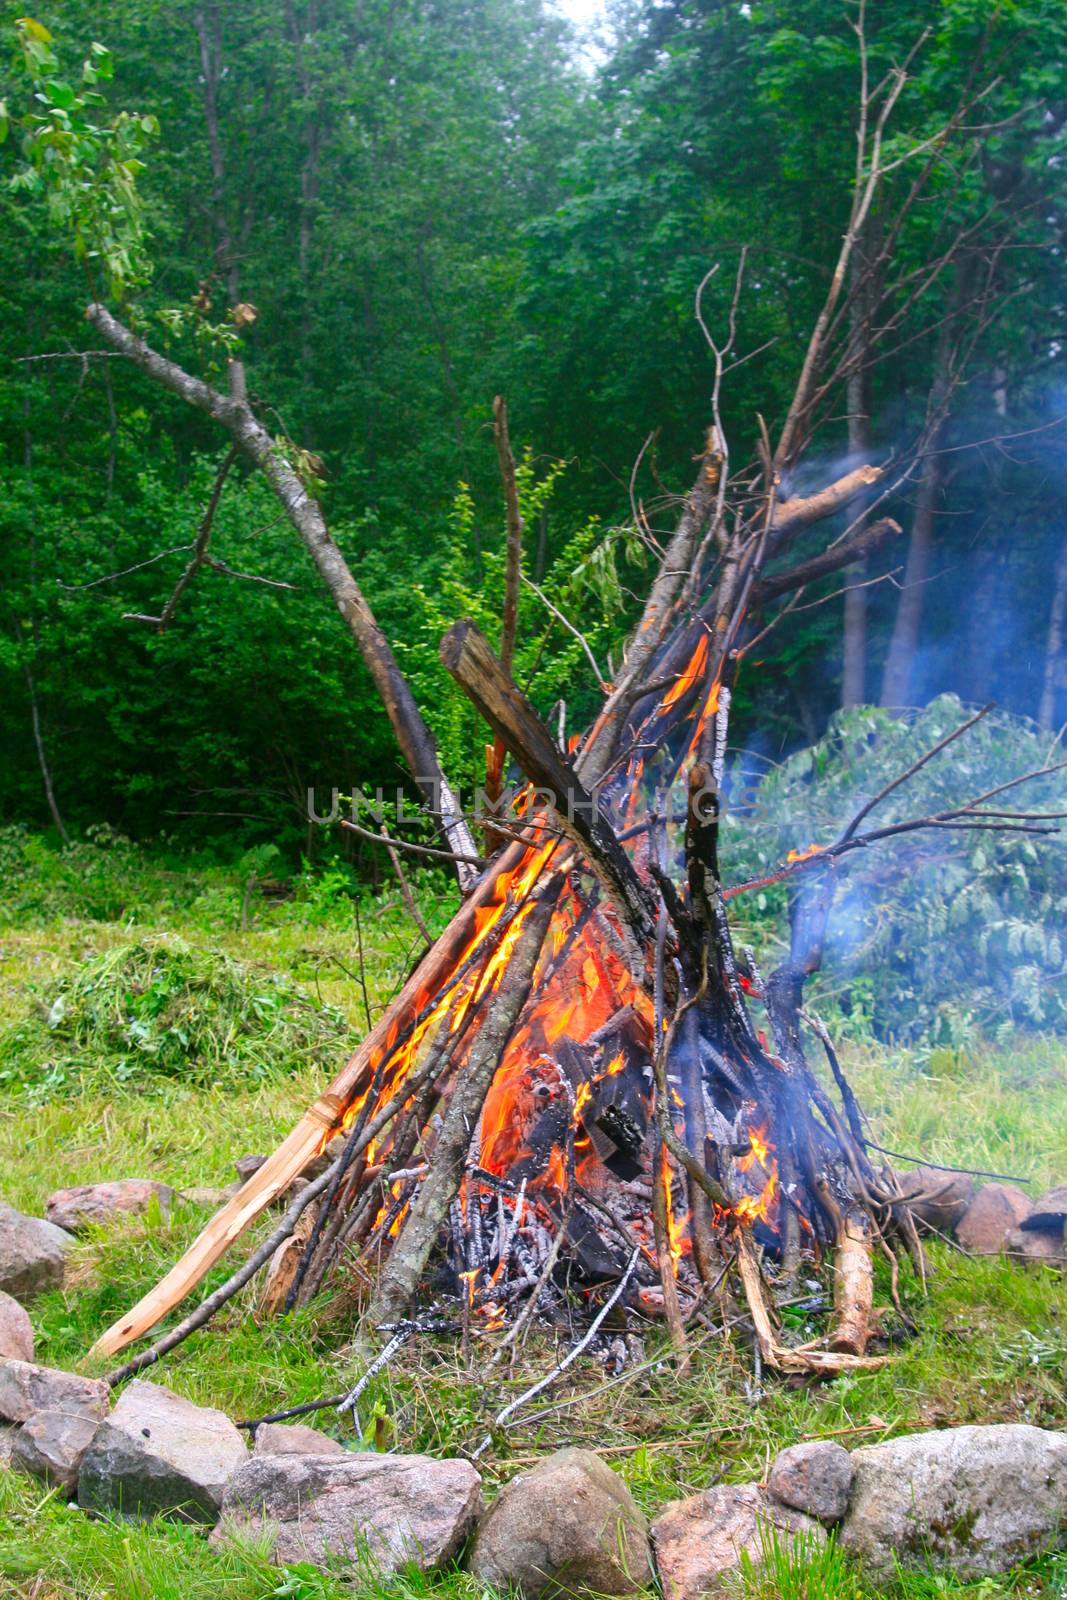 The Bonfire by Valokuva24